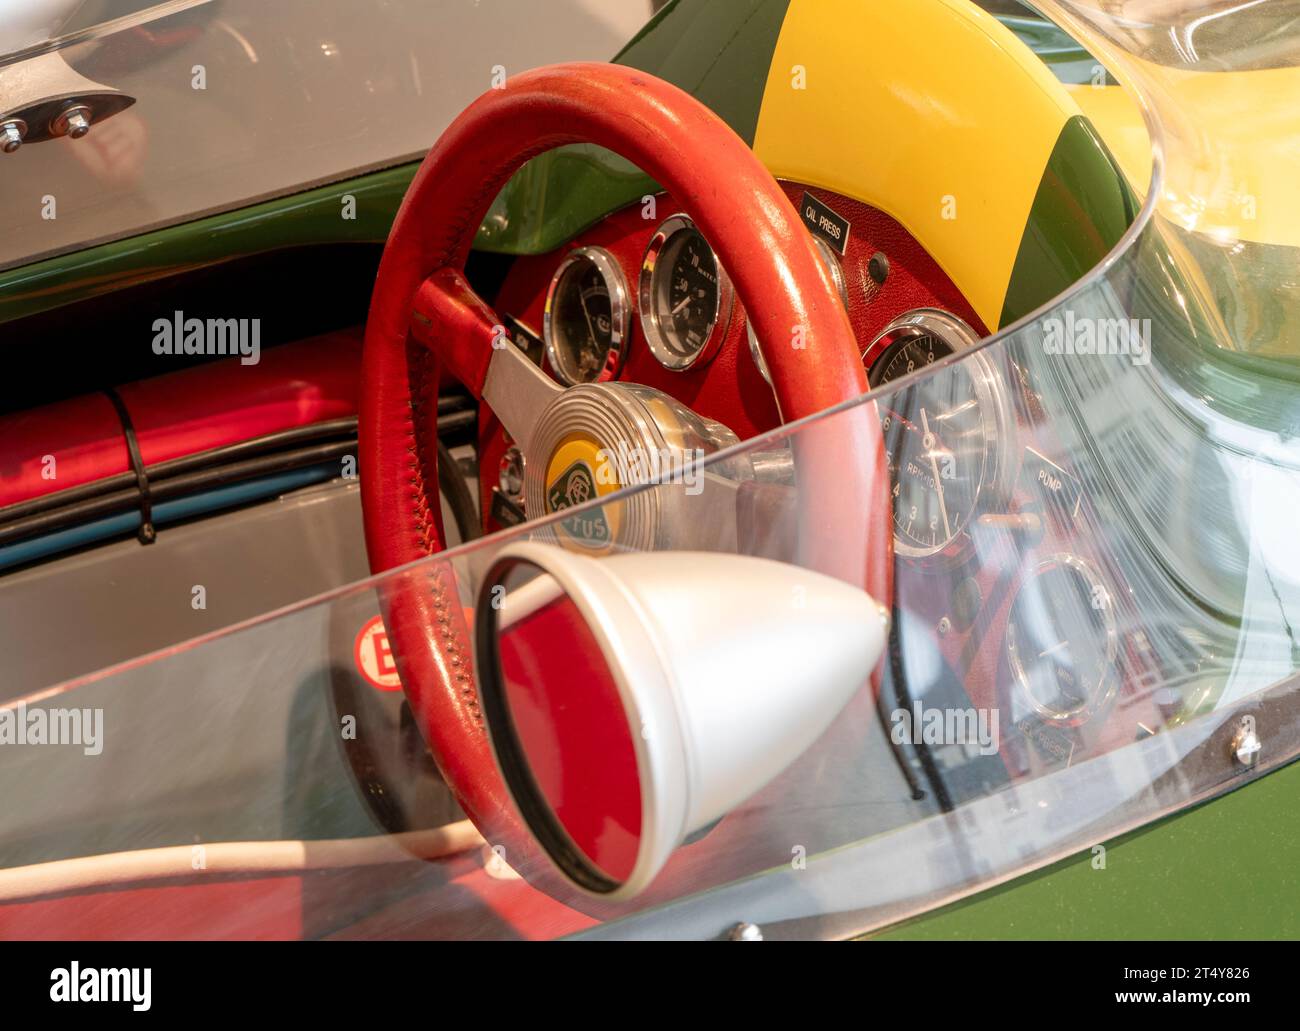 Détail du cockpit d'une voiture de course Lotus 25 R6 exposition au Jim Clarke Motorsport Museum, Newtown Street, Duns, Berwickshire, Écosse, ROYAUME-UNI Banque D'Images